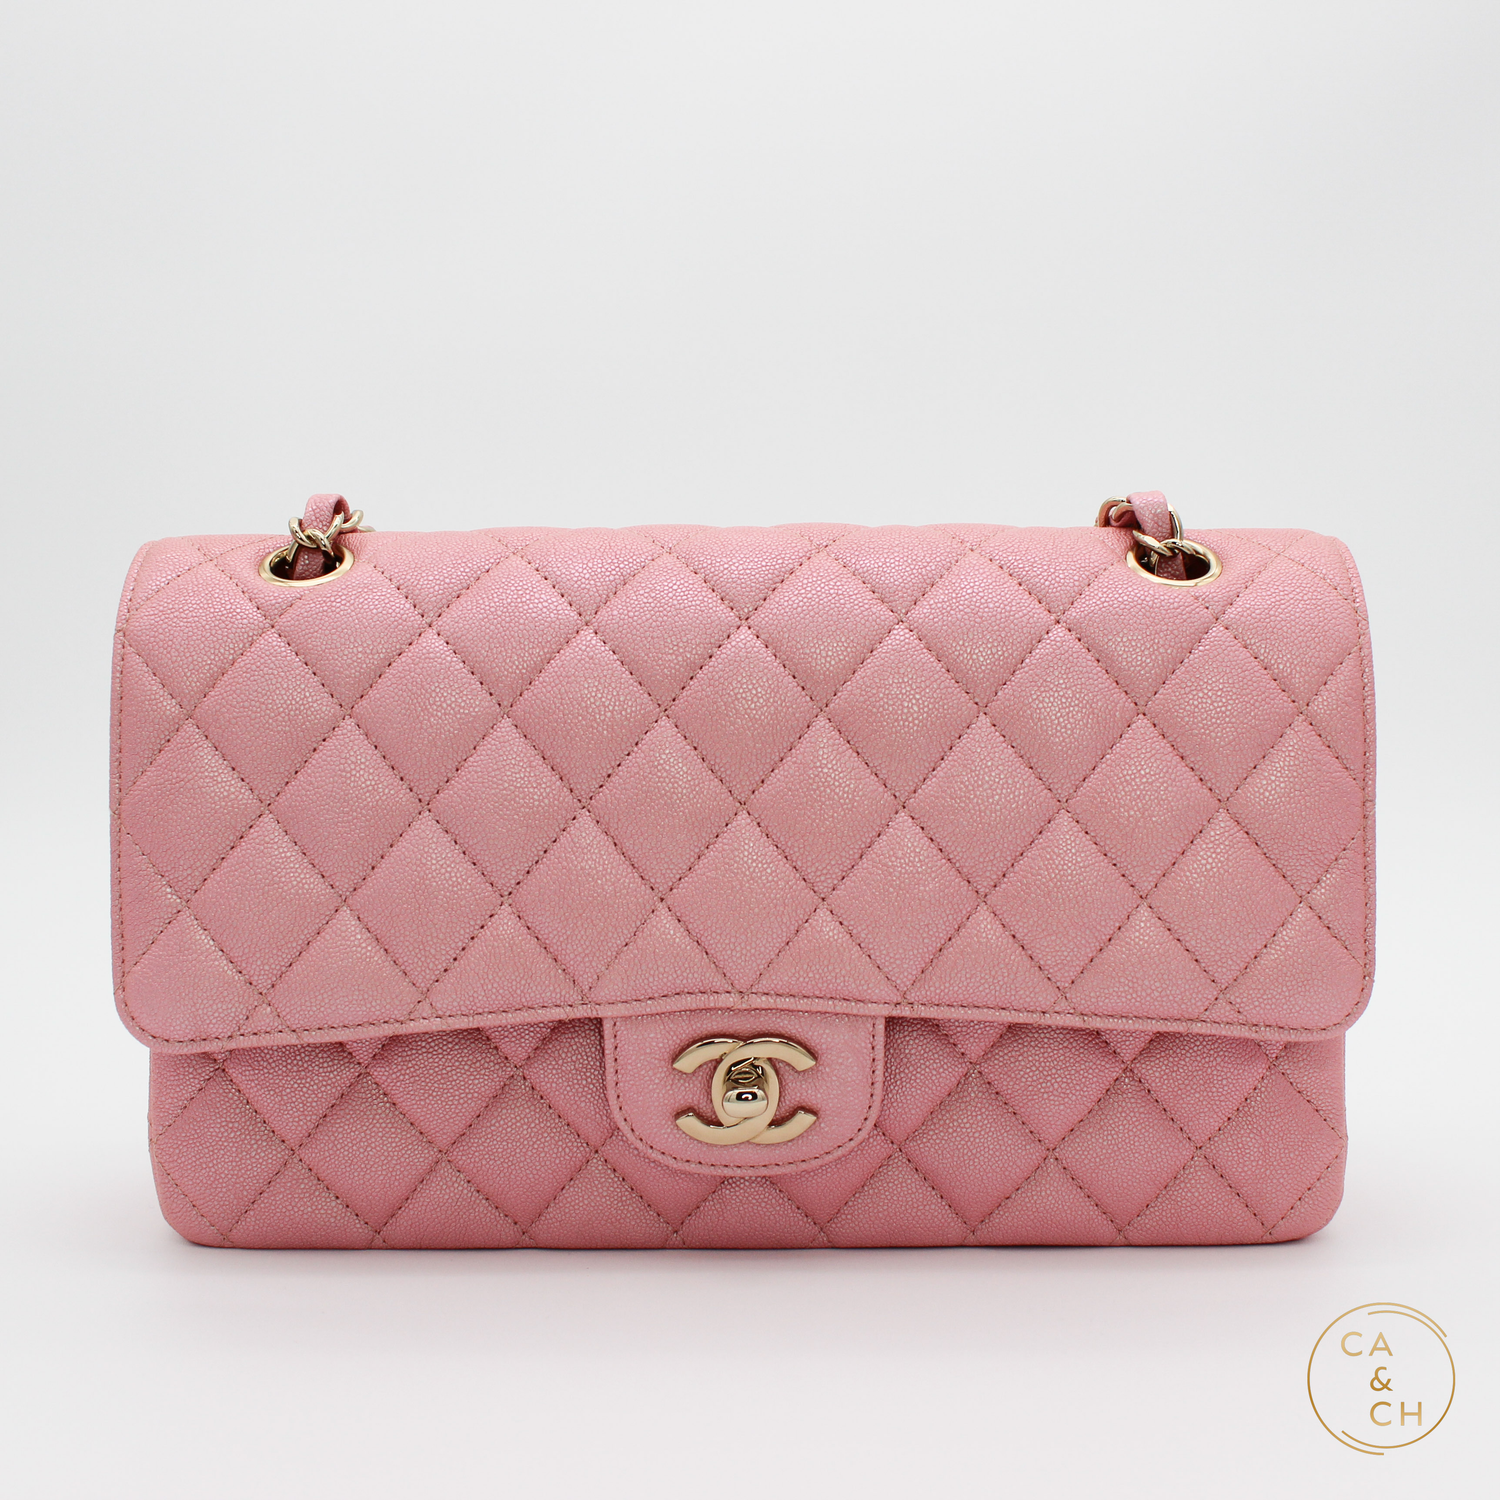 Chanel Iridescent Calfskin Quilted Medium Double Flap Light Pink